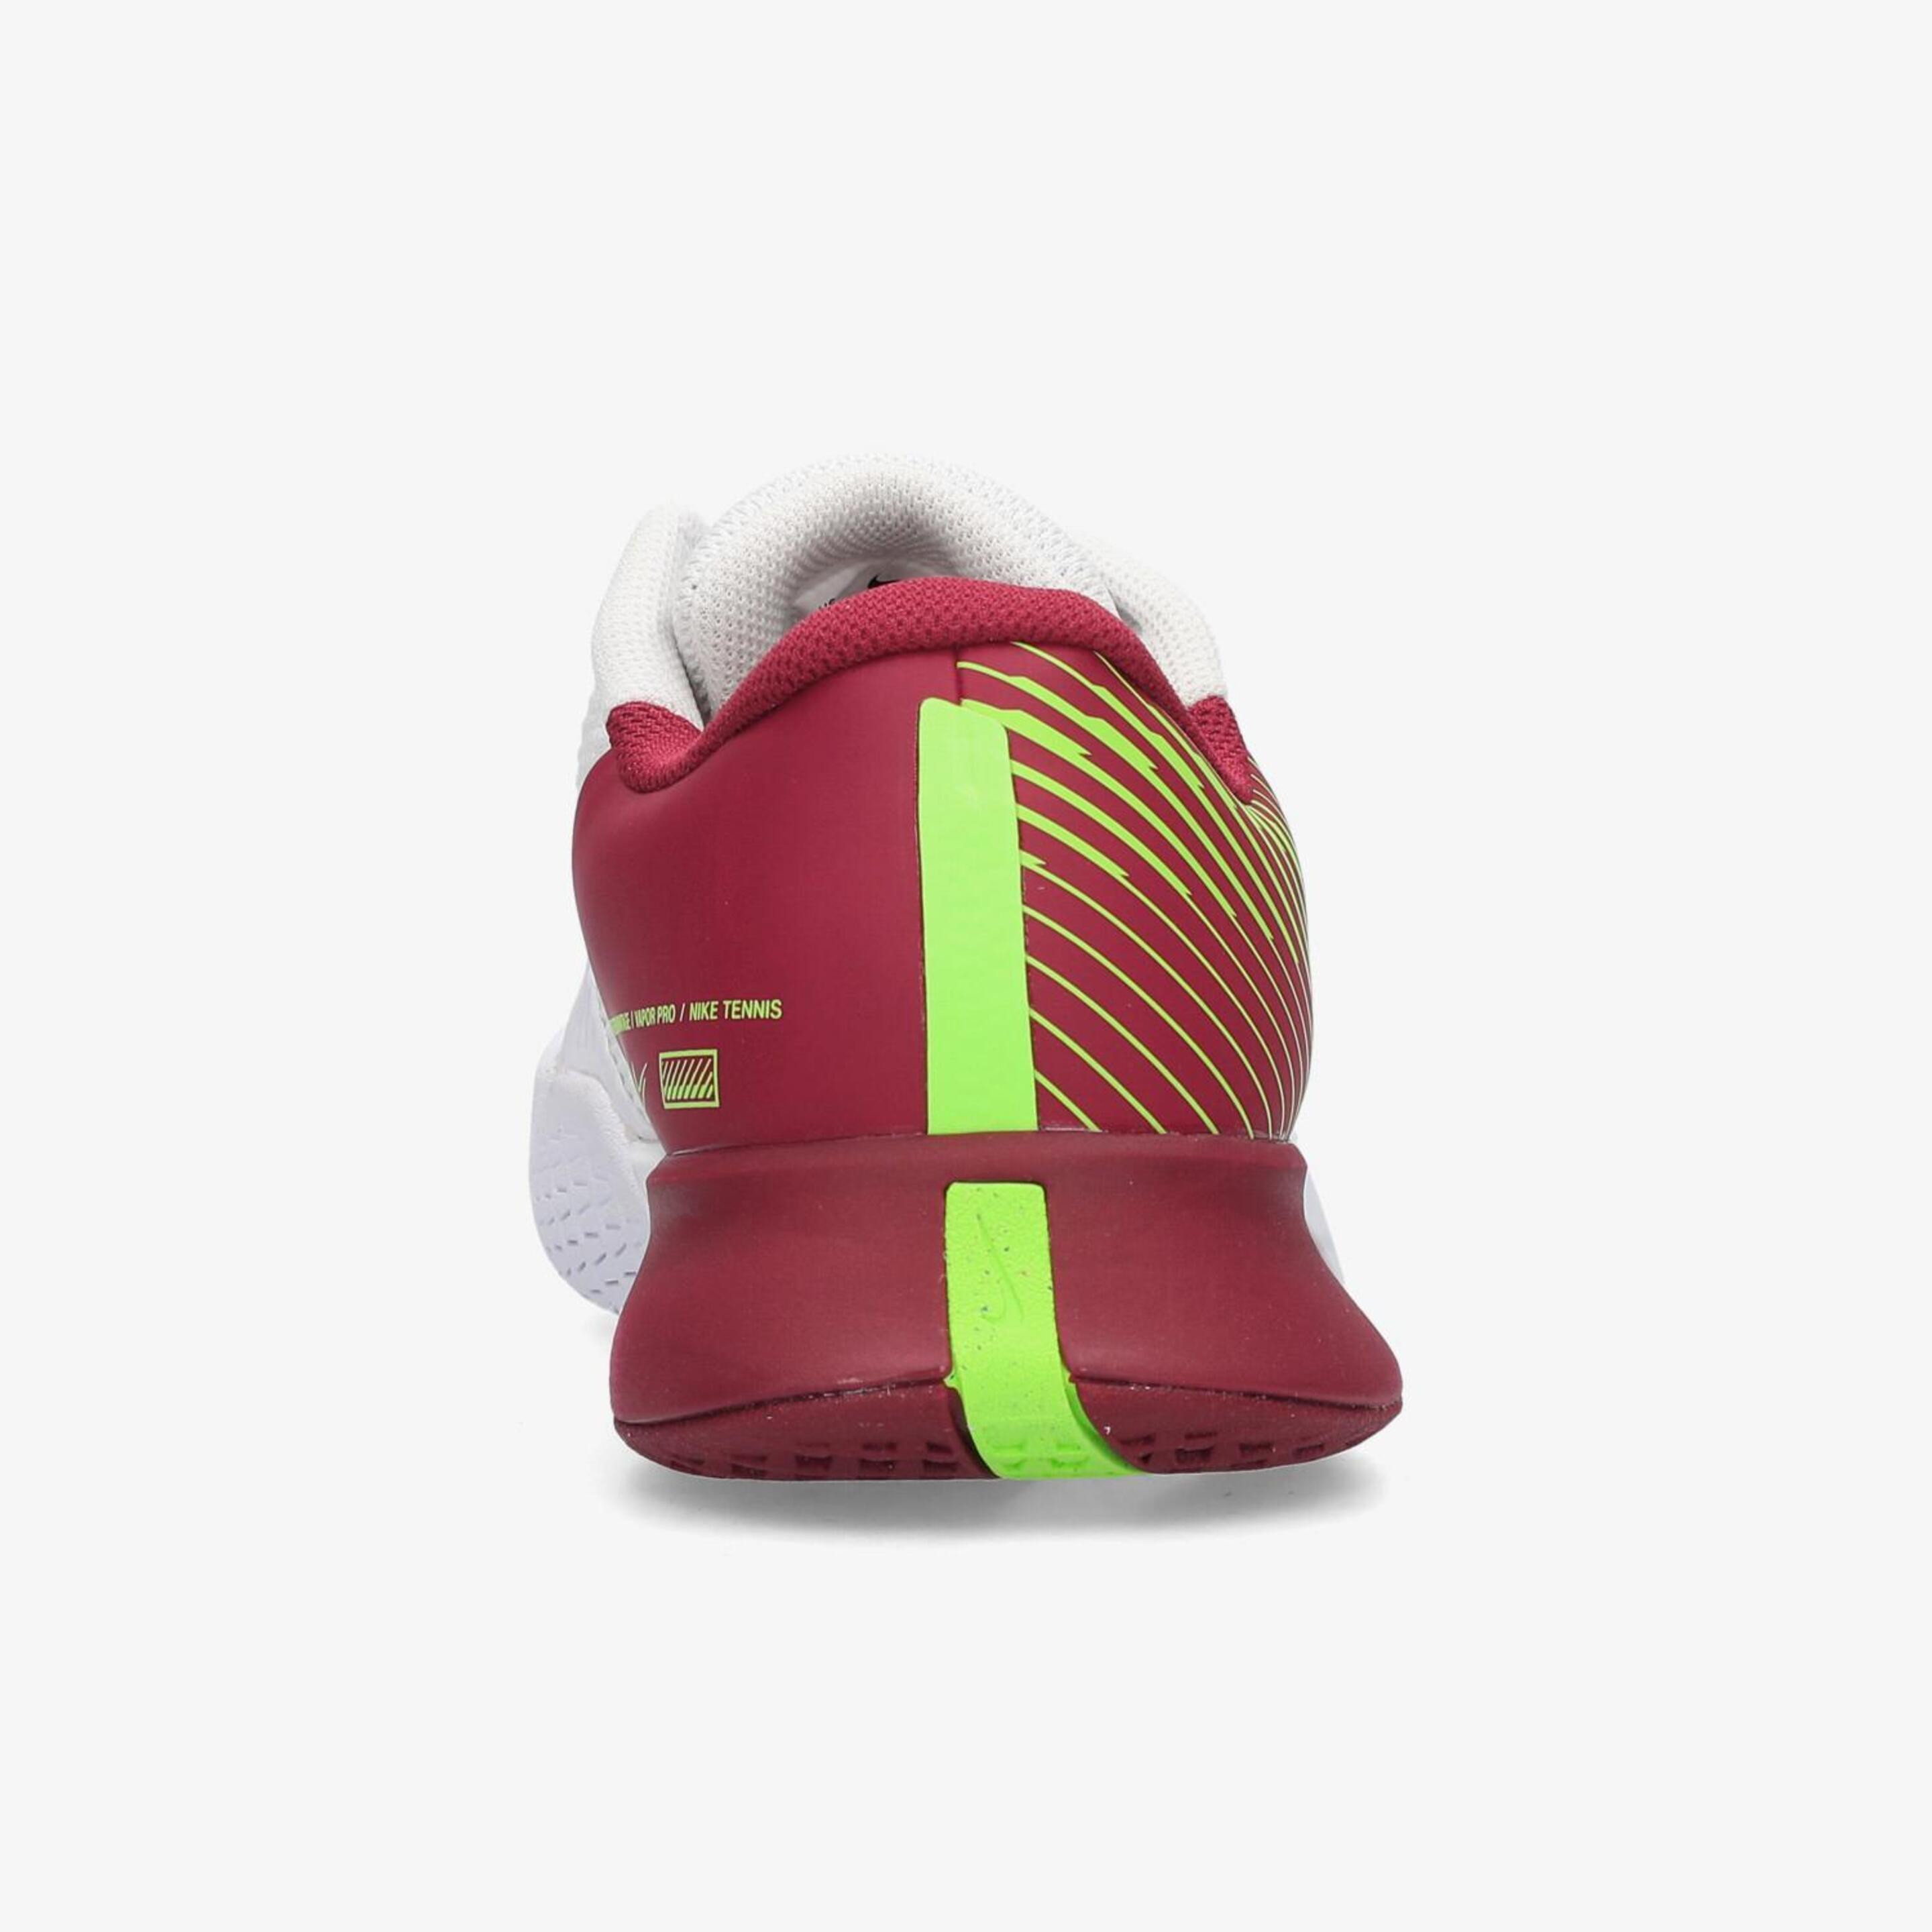 Nike Vapor Pro 2 - 104 BCO-RJO - Zapatillas Tenis Hombre